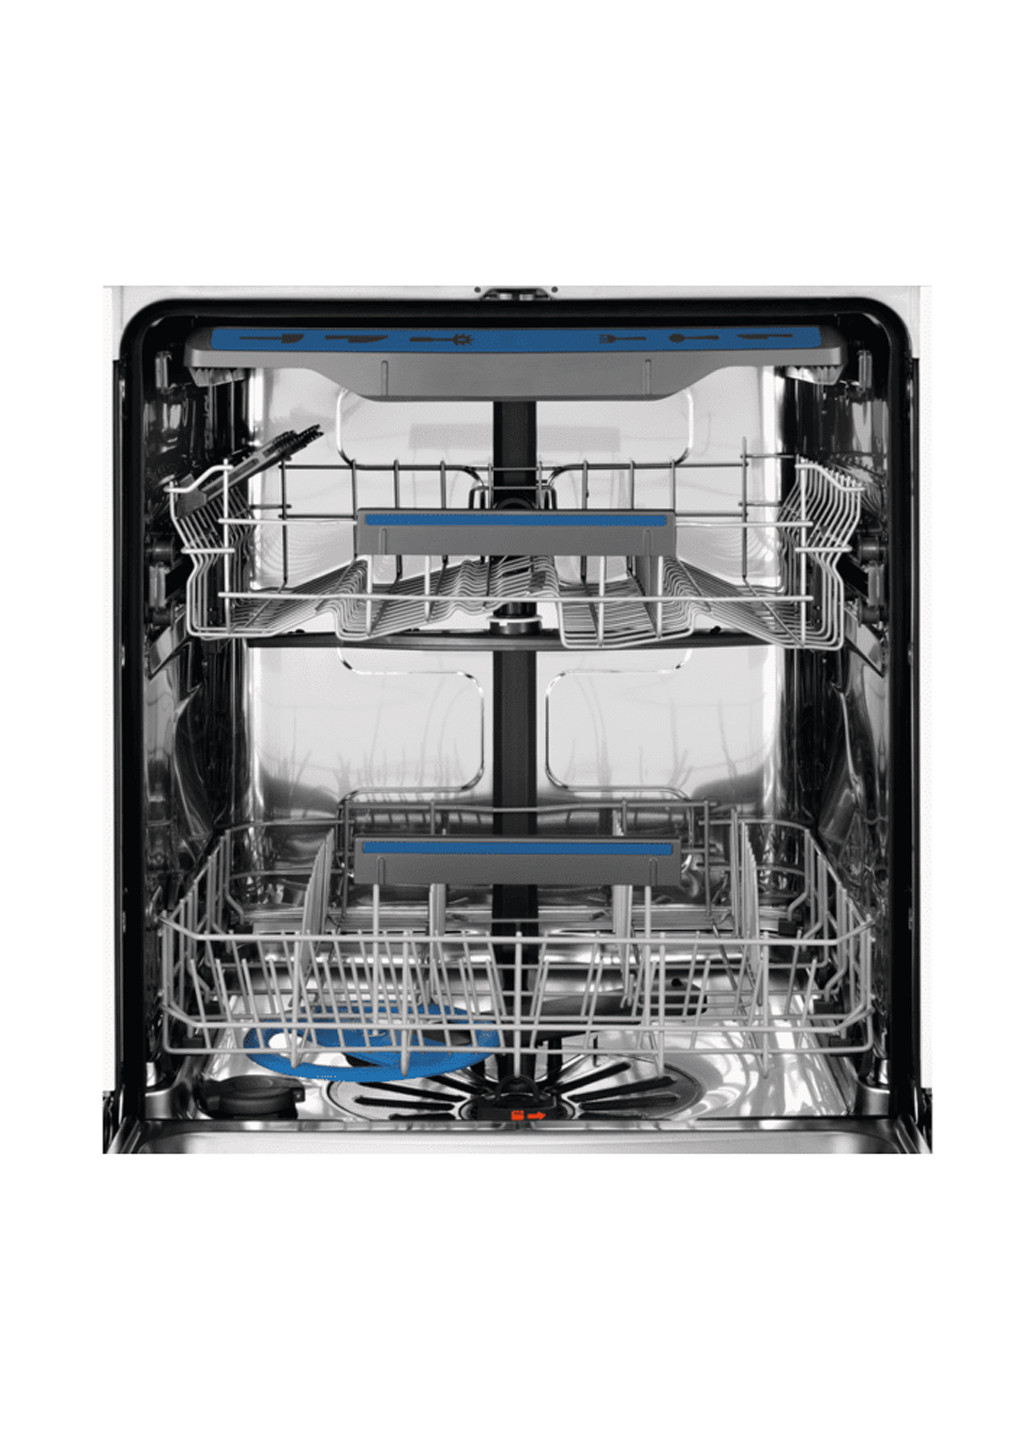 Посудомоечная машина полновстраиваемая Electrolux EES948300L